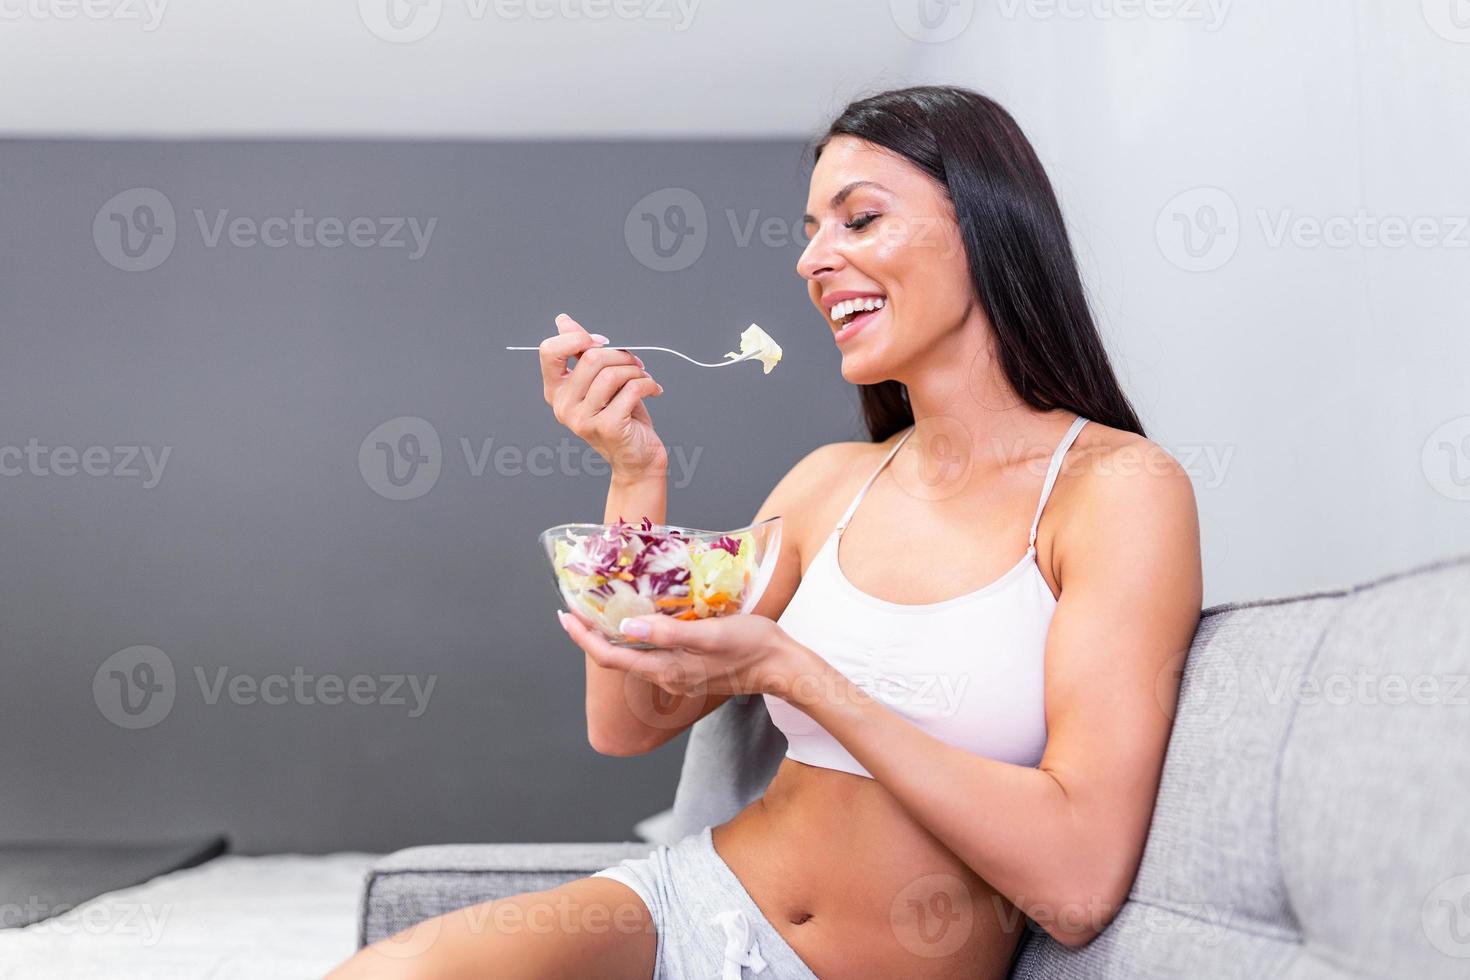 belle jeune femme mangeant une salade de légumes. régime équilibré. belle femme souriante mangeant une salade végétarienne bio fraîche. concept d'alimentation, d'alimentation et de mode de vie sain. santé, beauté, concept de régime. photo